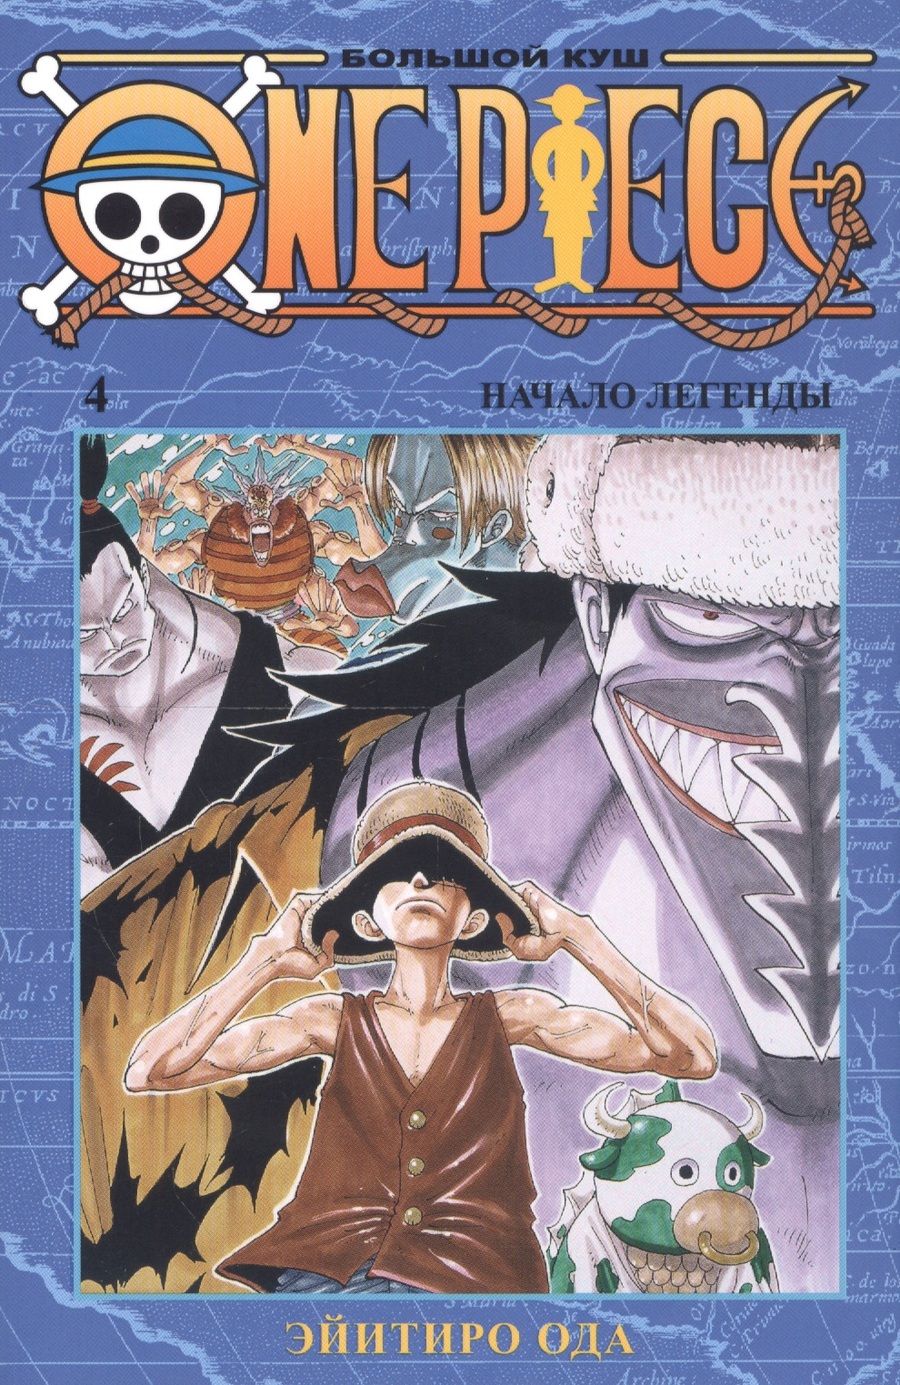 Обложка книги "Ода: One Piece. Большой куш. Книга 4. Начало легенды"